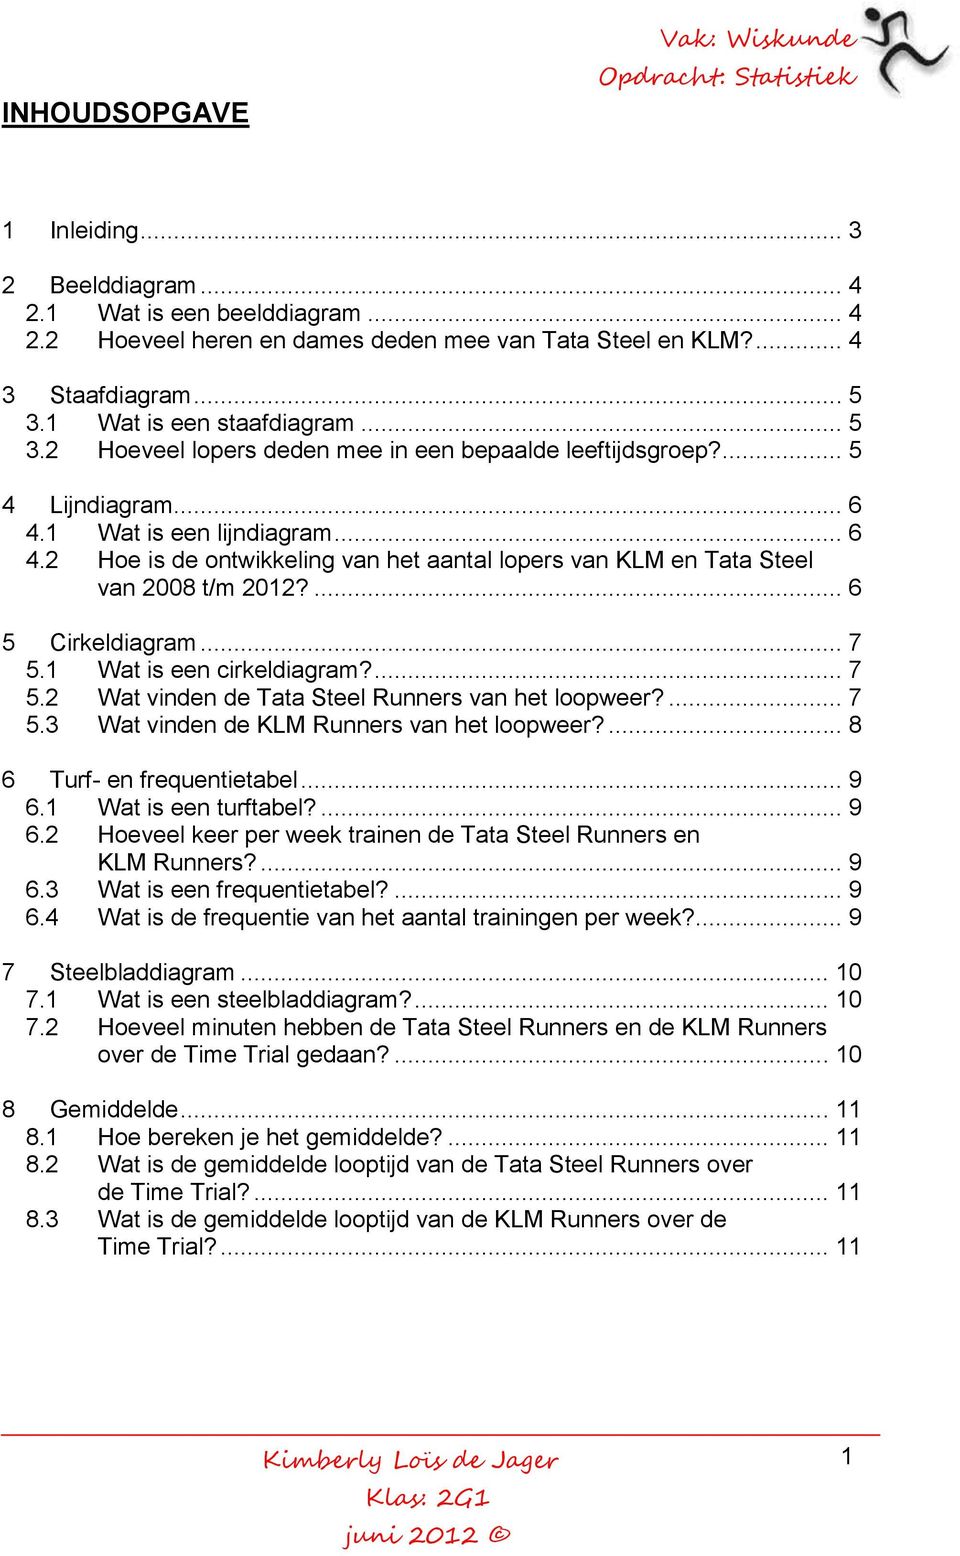 1 Wat is een lijndiagram... 6 4.2 Hoe is de ontwikkeling van het aantal lopers van KLM en Tata Steel van 2008 t/m 2012?... 6 5 Cirkeldiagram... 7 5.1 Wat is een cirkeldiagram?... 7 5.2 Wat vinden de Tata Steel Runners van het loopweer?